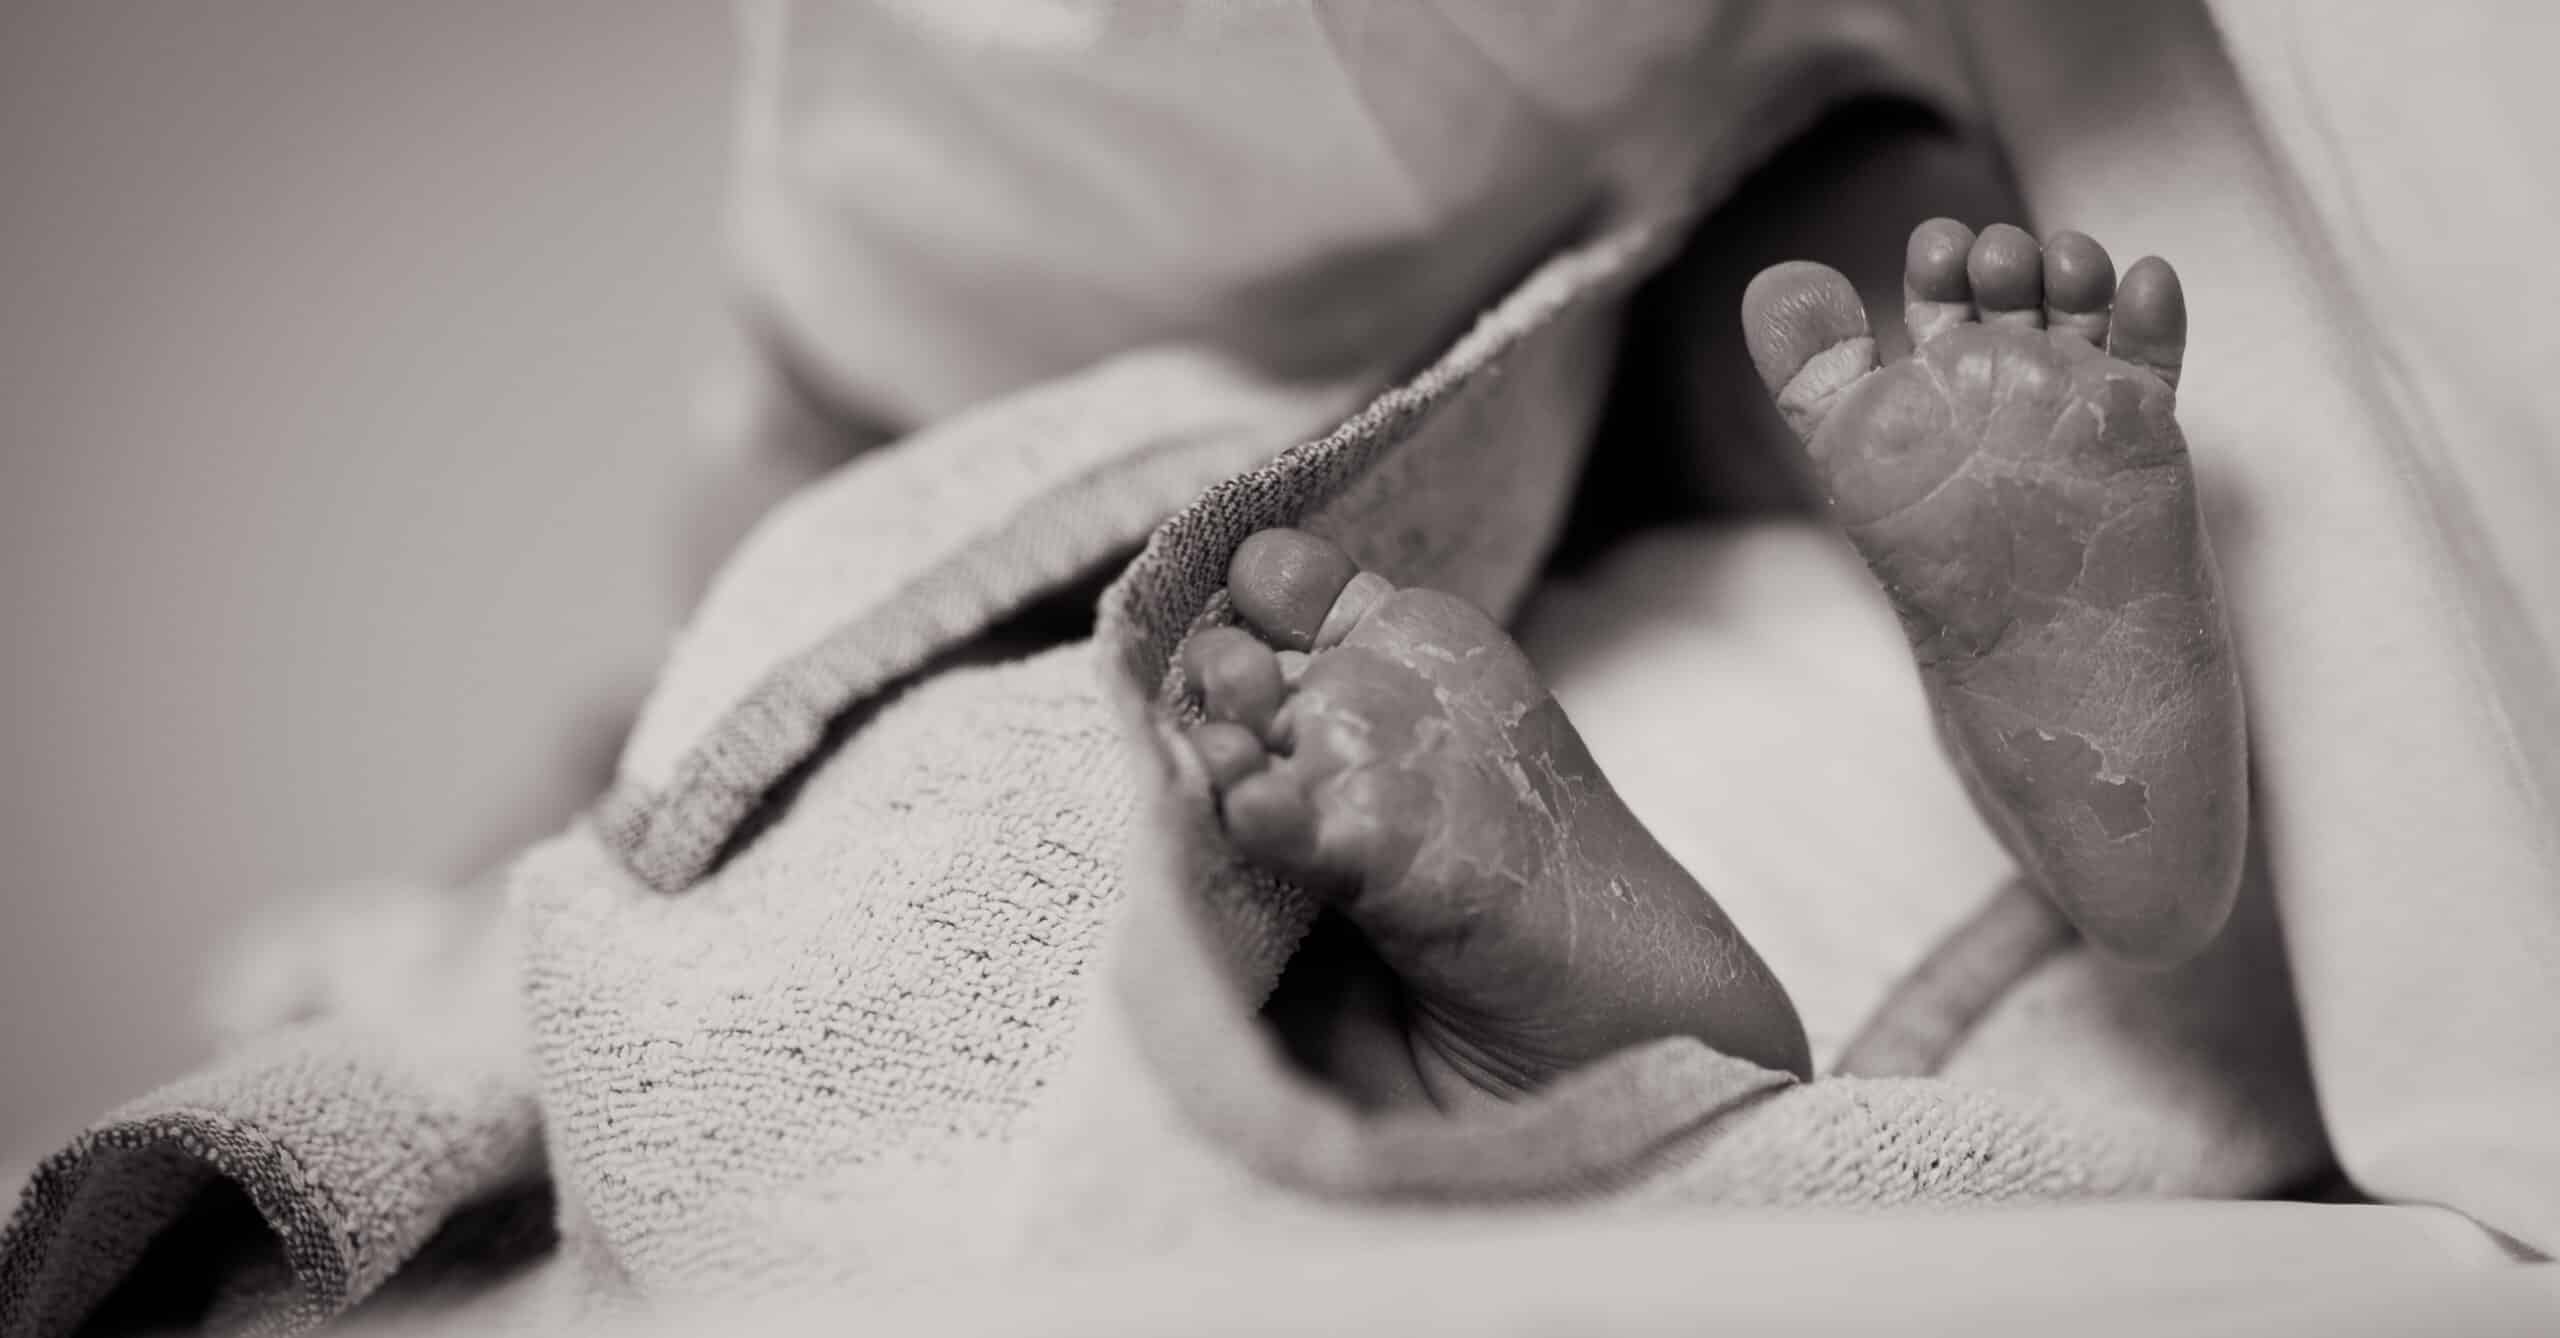 Mama a zece copii a murit la nastere in Maternitatea Bega din Timisoara. Poveste reala relatata de "Anonima de dincolo de ocean" | Demamici.ro